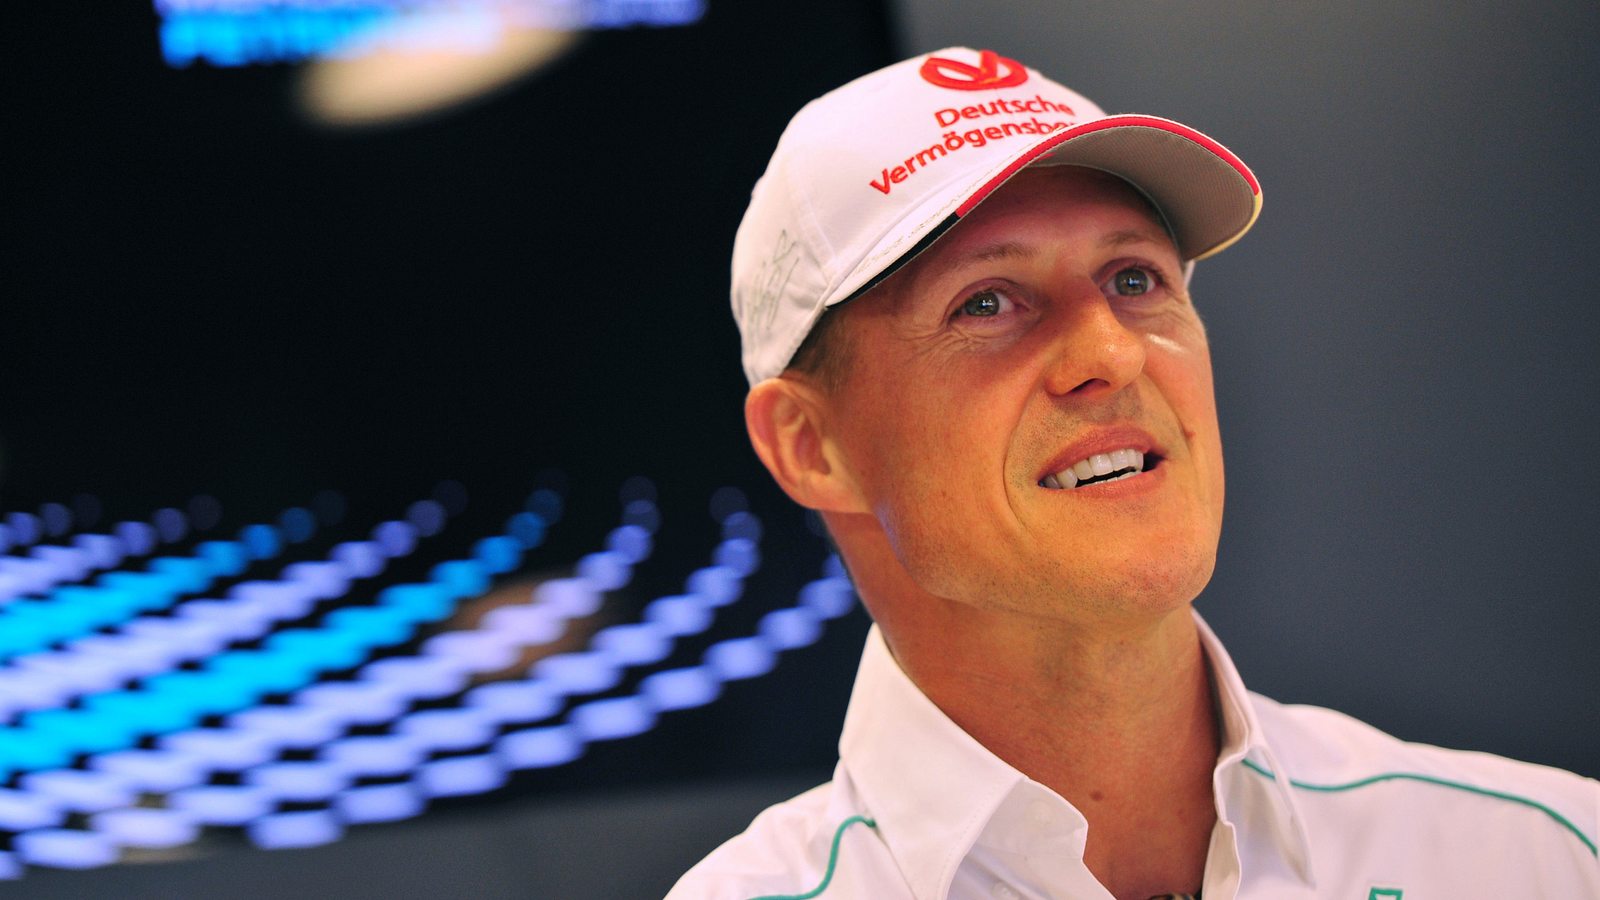 Michael Schumacher Hoffnungsvolle Neuigkeiten Von Mallorca Intouch